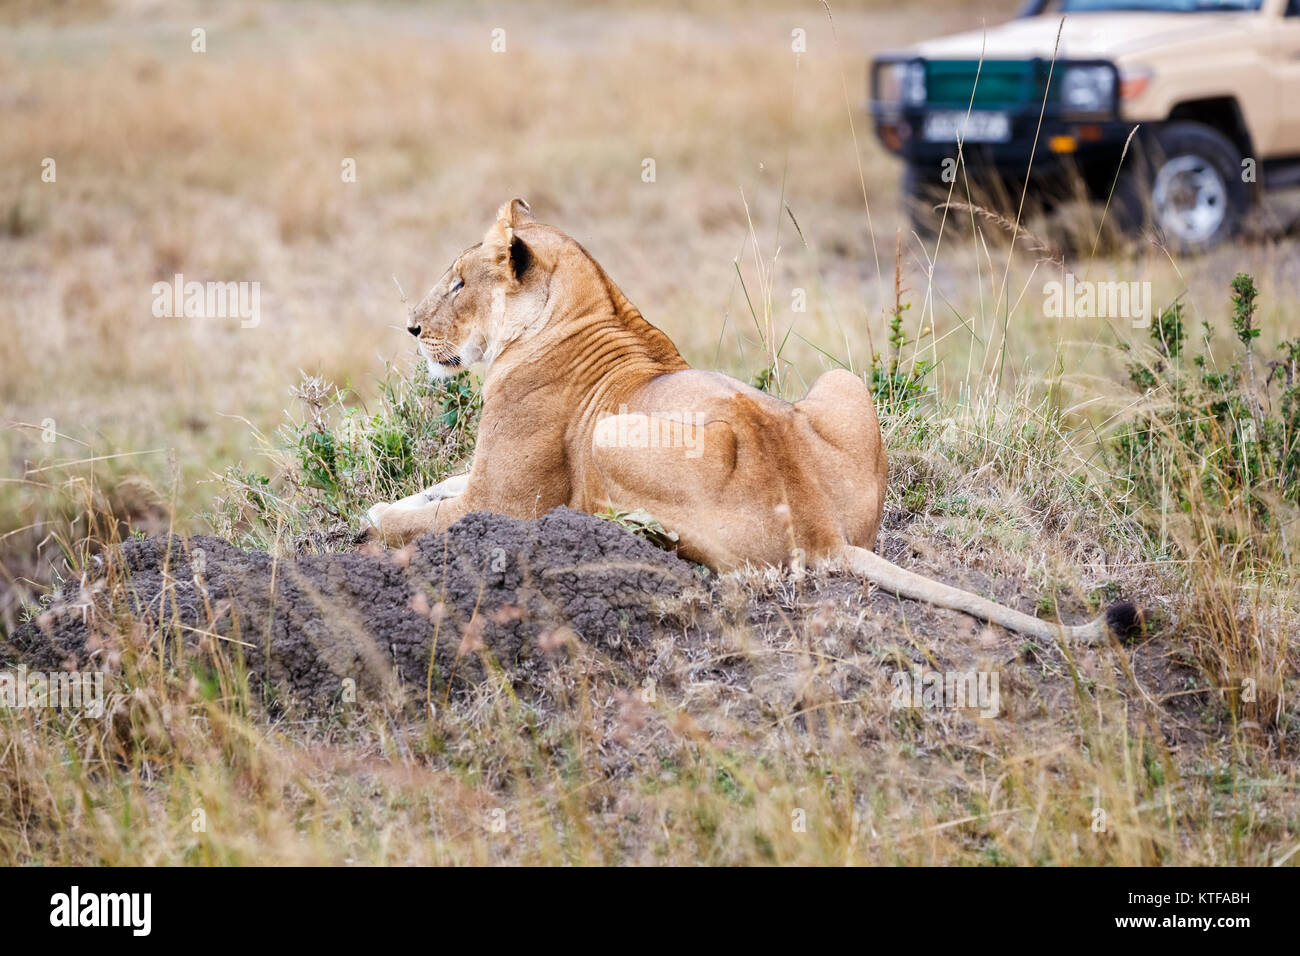 Löwin (Panthera leo) Festlegung auf einem Hügel des Bodens in der Savanne Wiesen mit einem Fahrzeug in der Nähe Safari in der Masai Mara, Kenia Stockfoto